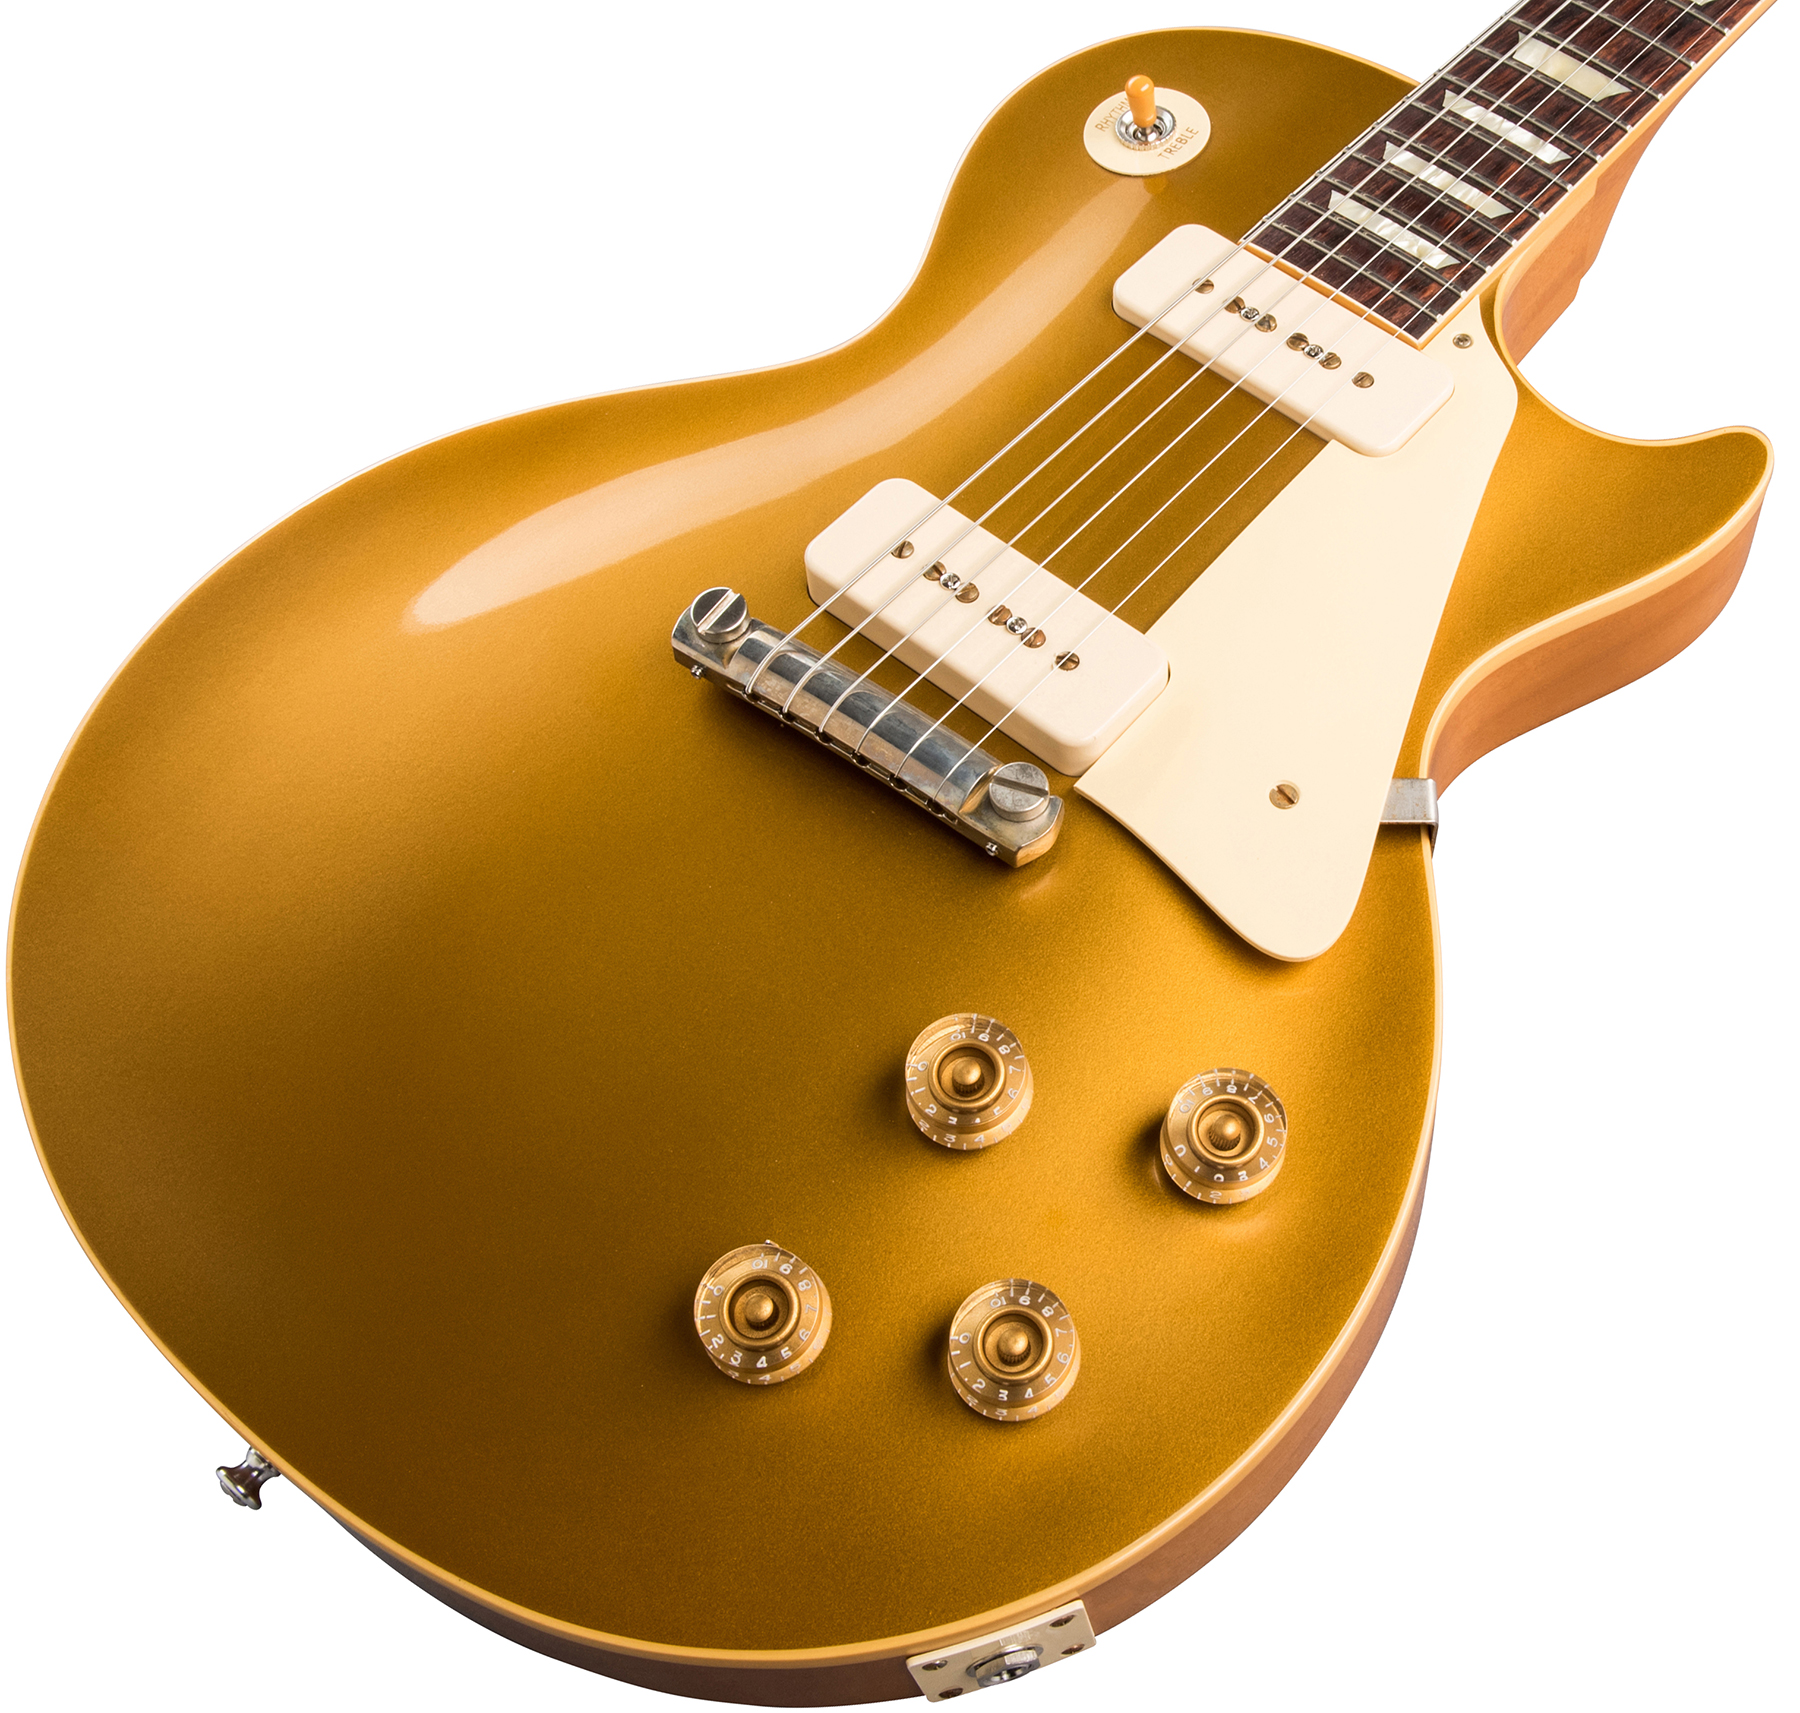 Gibson Custom Shop Les Paul Goldtop 1954 Reissue 2019 2p90 Ht Rw - Vos Double Gold - Single-Cut-E-Gitarre - Variation 3